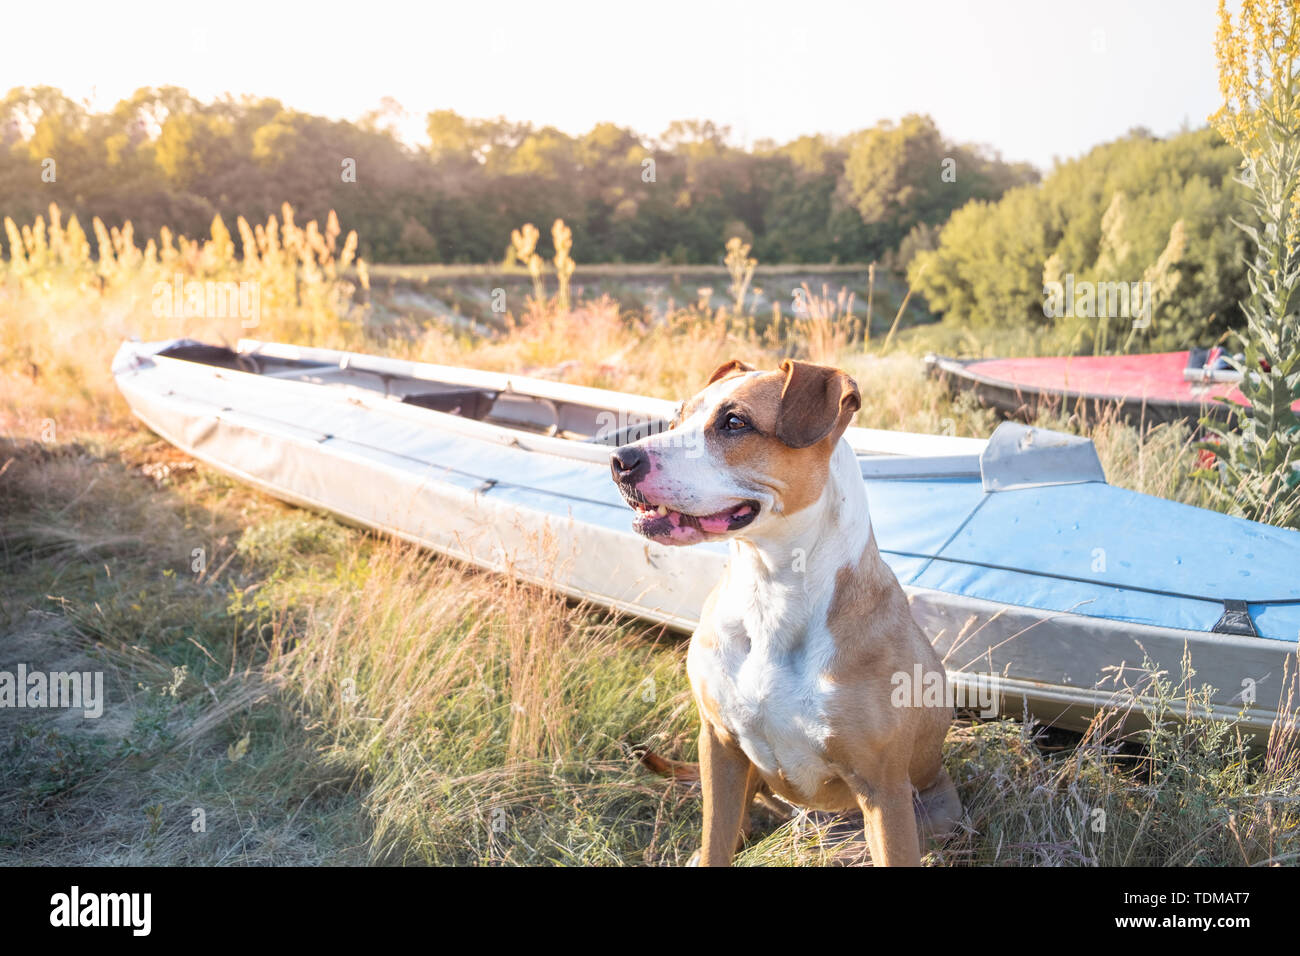 Ein Hund sitzt vor dem Kanu Boote im schönen Abendlicht. Aktive Erholung mit Haustieren Konzept: American Staffordshire Terrier in einem Kajak ri Stockfoto